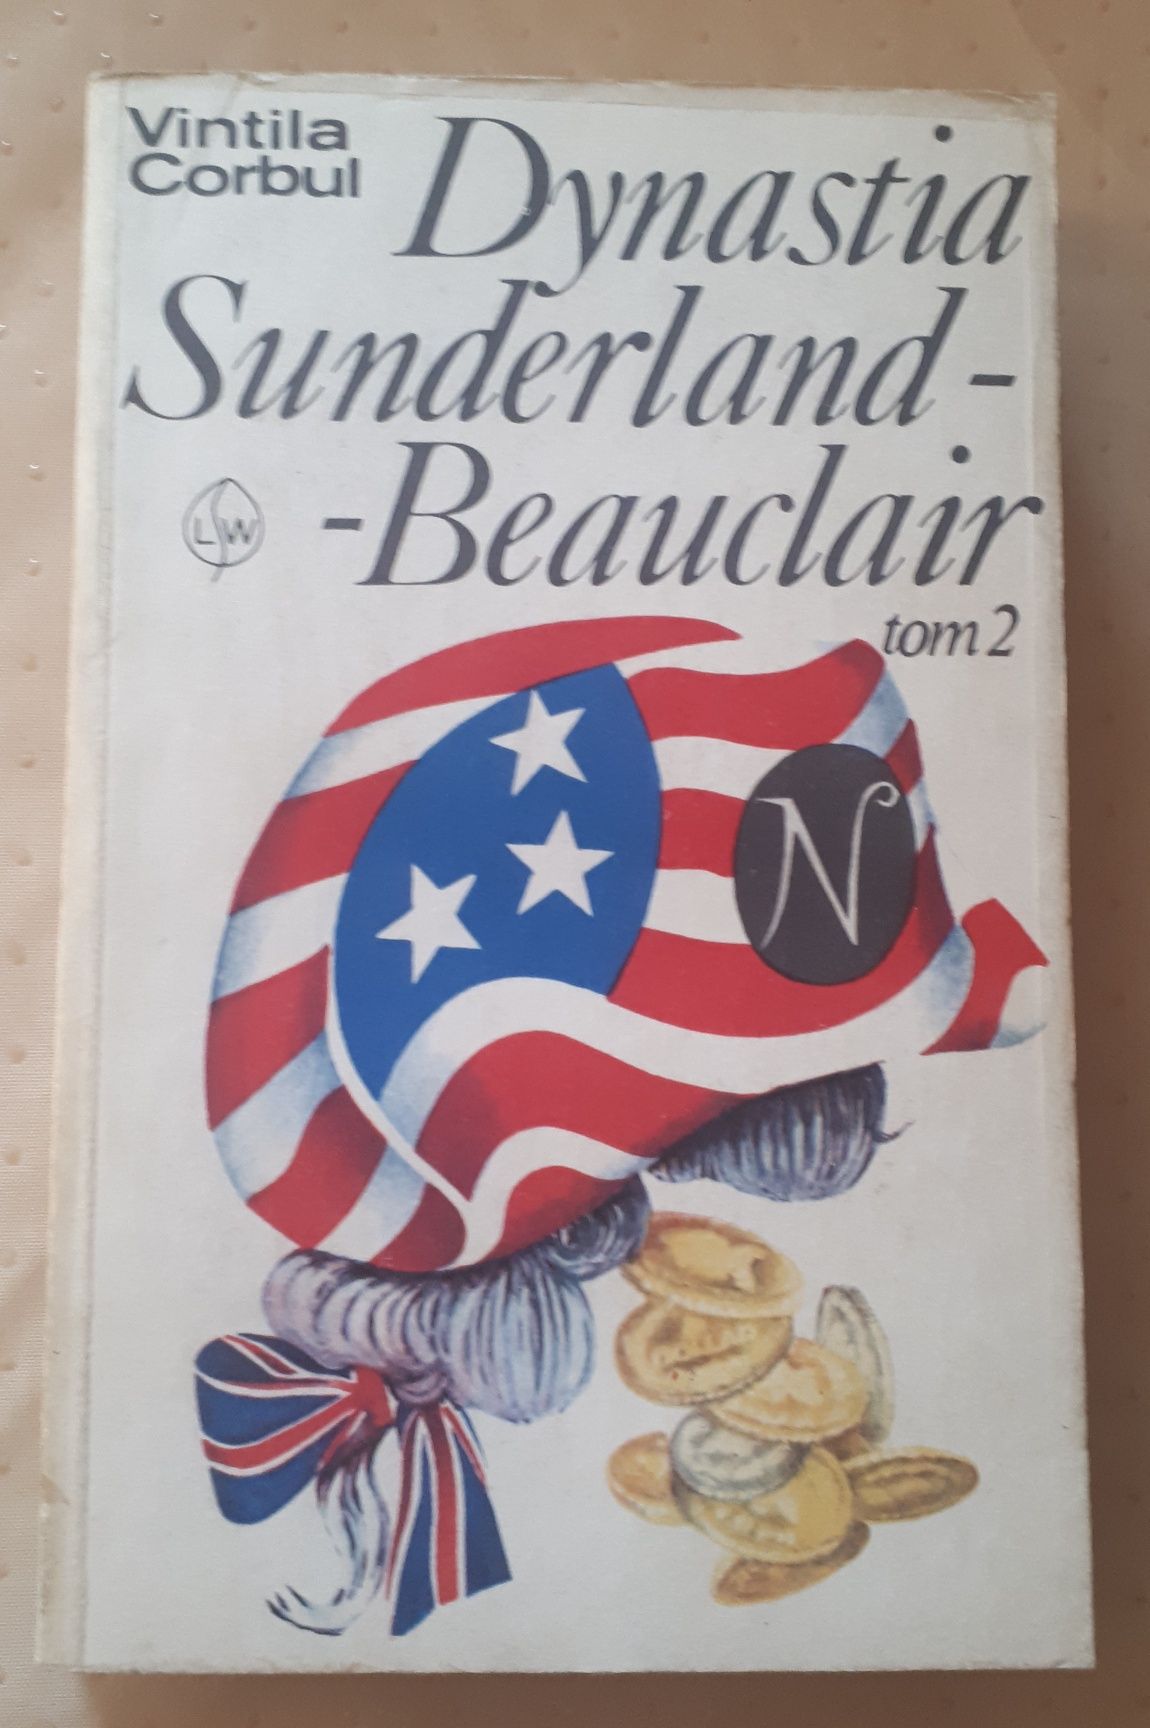 Dynastia Sunderland-Beauclair t. 2 VINTILA CORBUL 1980